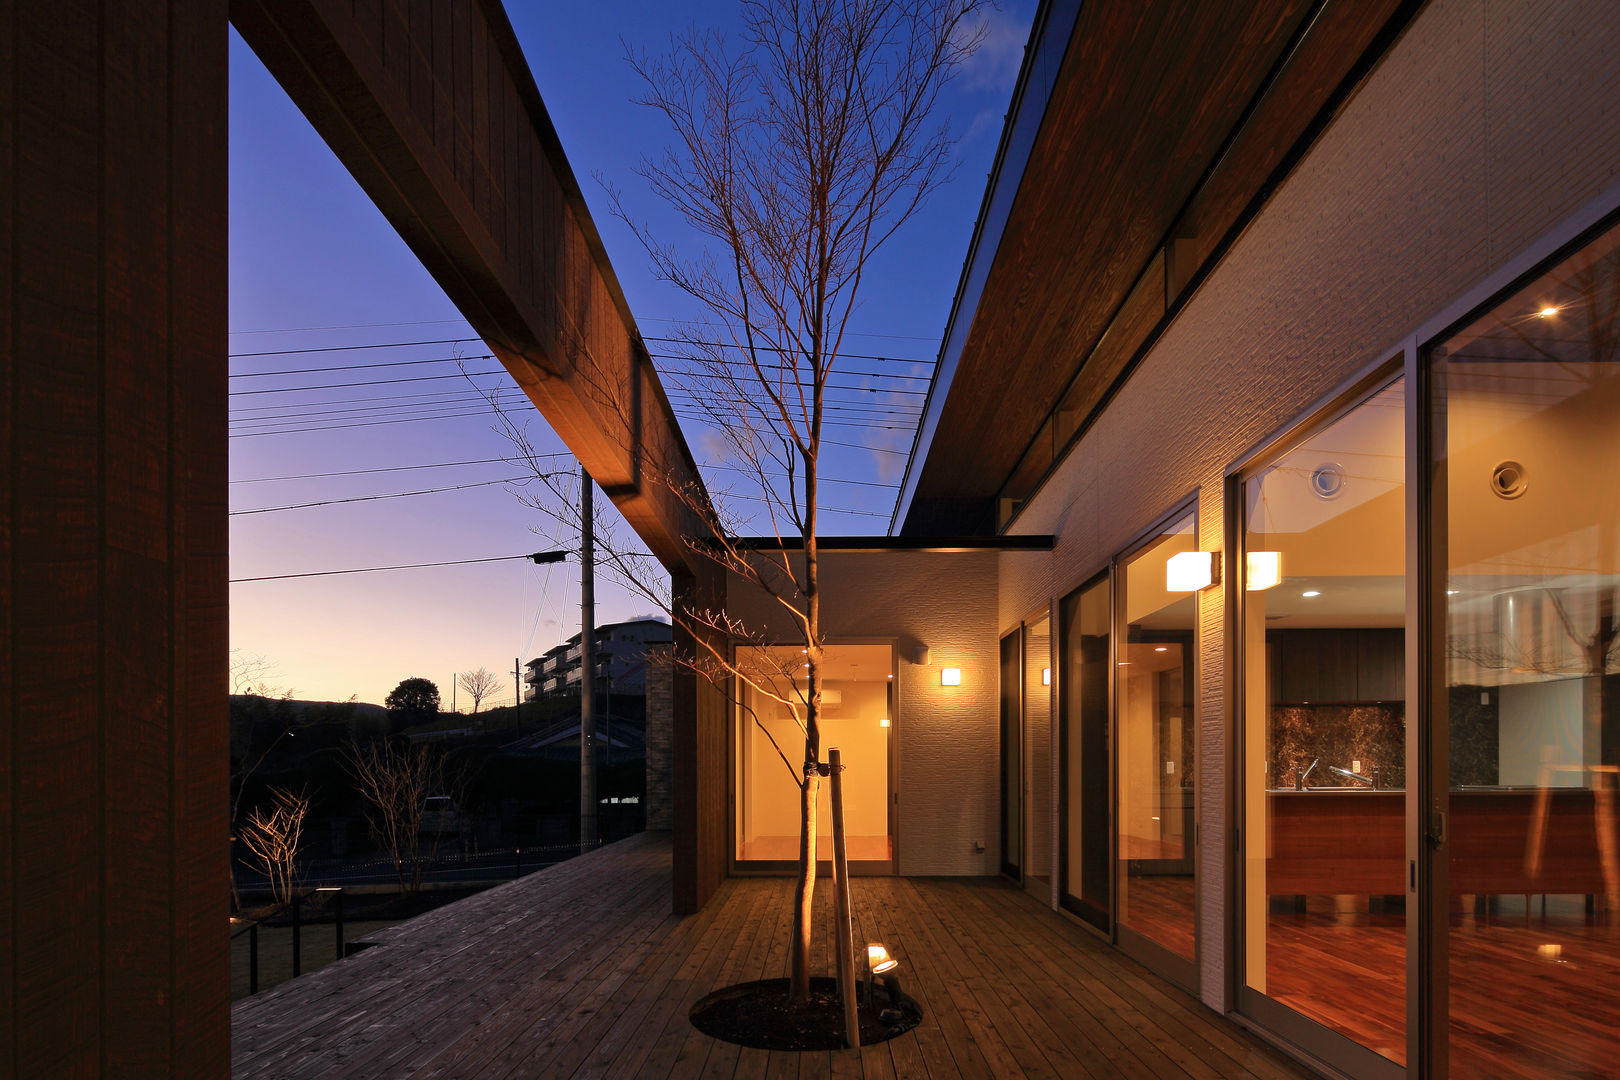 空に繋がる住宅, 猪股浩介建築設計 Ｋｏｓｕｋｅ ＩｎｏｍａｔａＡＲＨＩＴＥＣＴＵＲＥ 猪股浩介建築設計 Ｋｏｓｕｋｅ ＩｎｏｍａｔａＡＲＨＩＴＥＣＴＵＲＥ Modern Garden Wood Wood effect